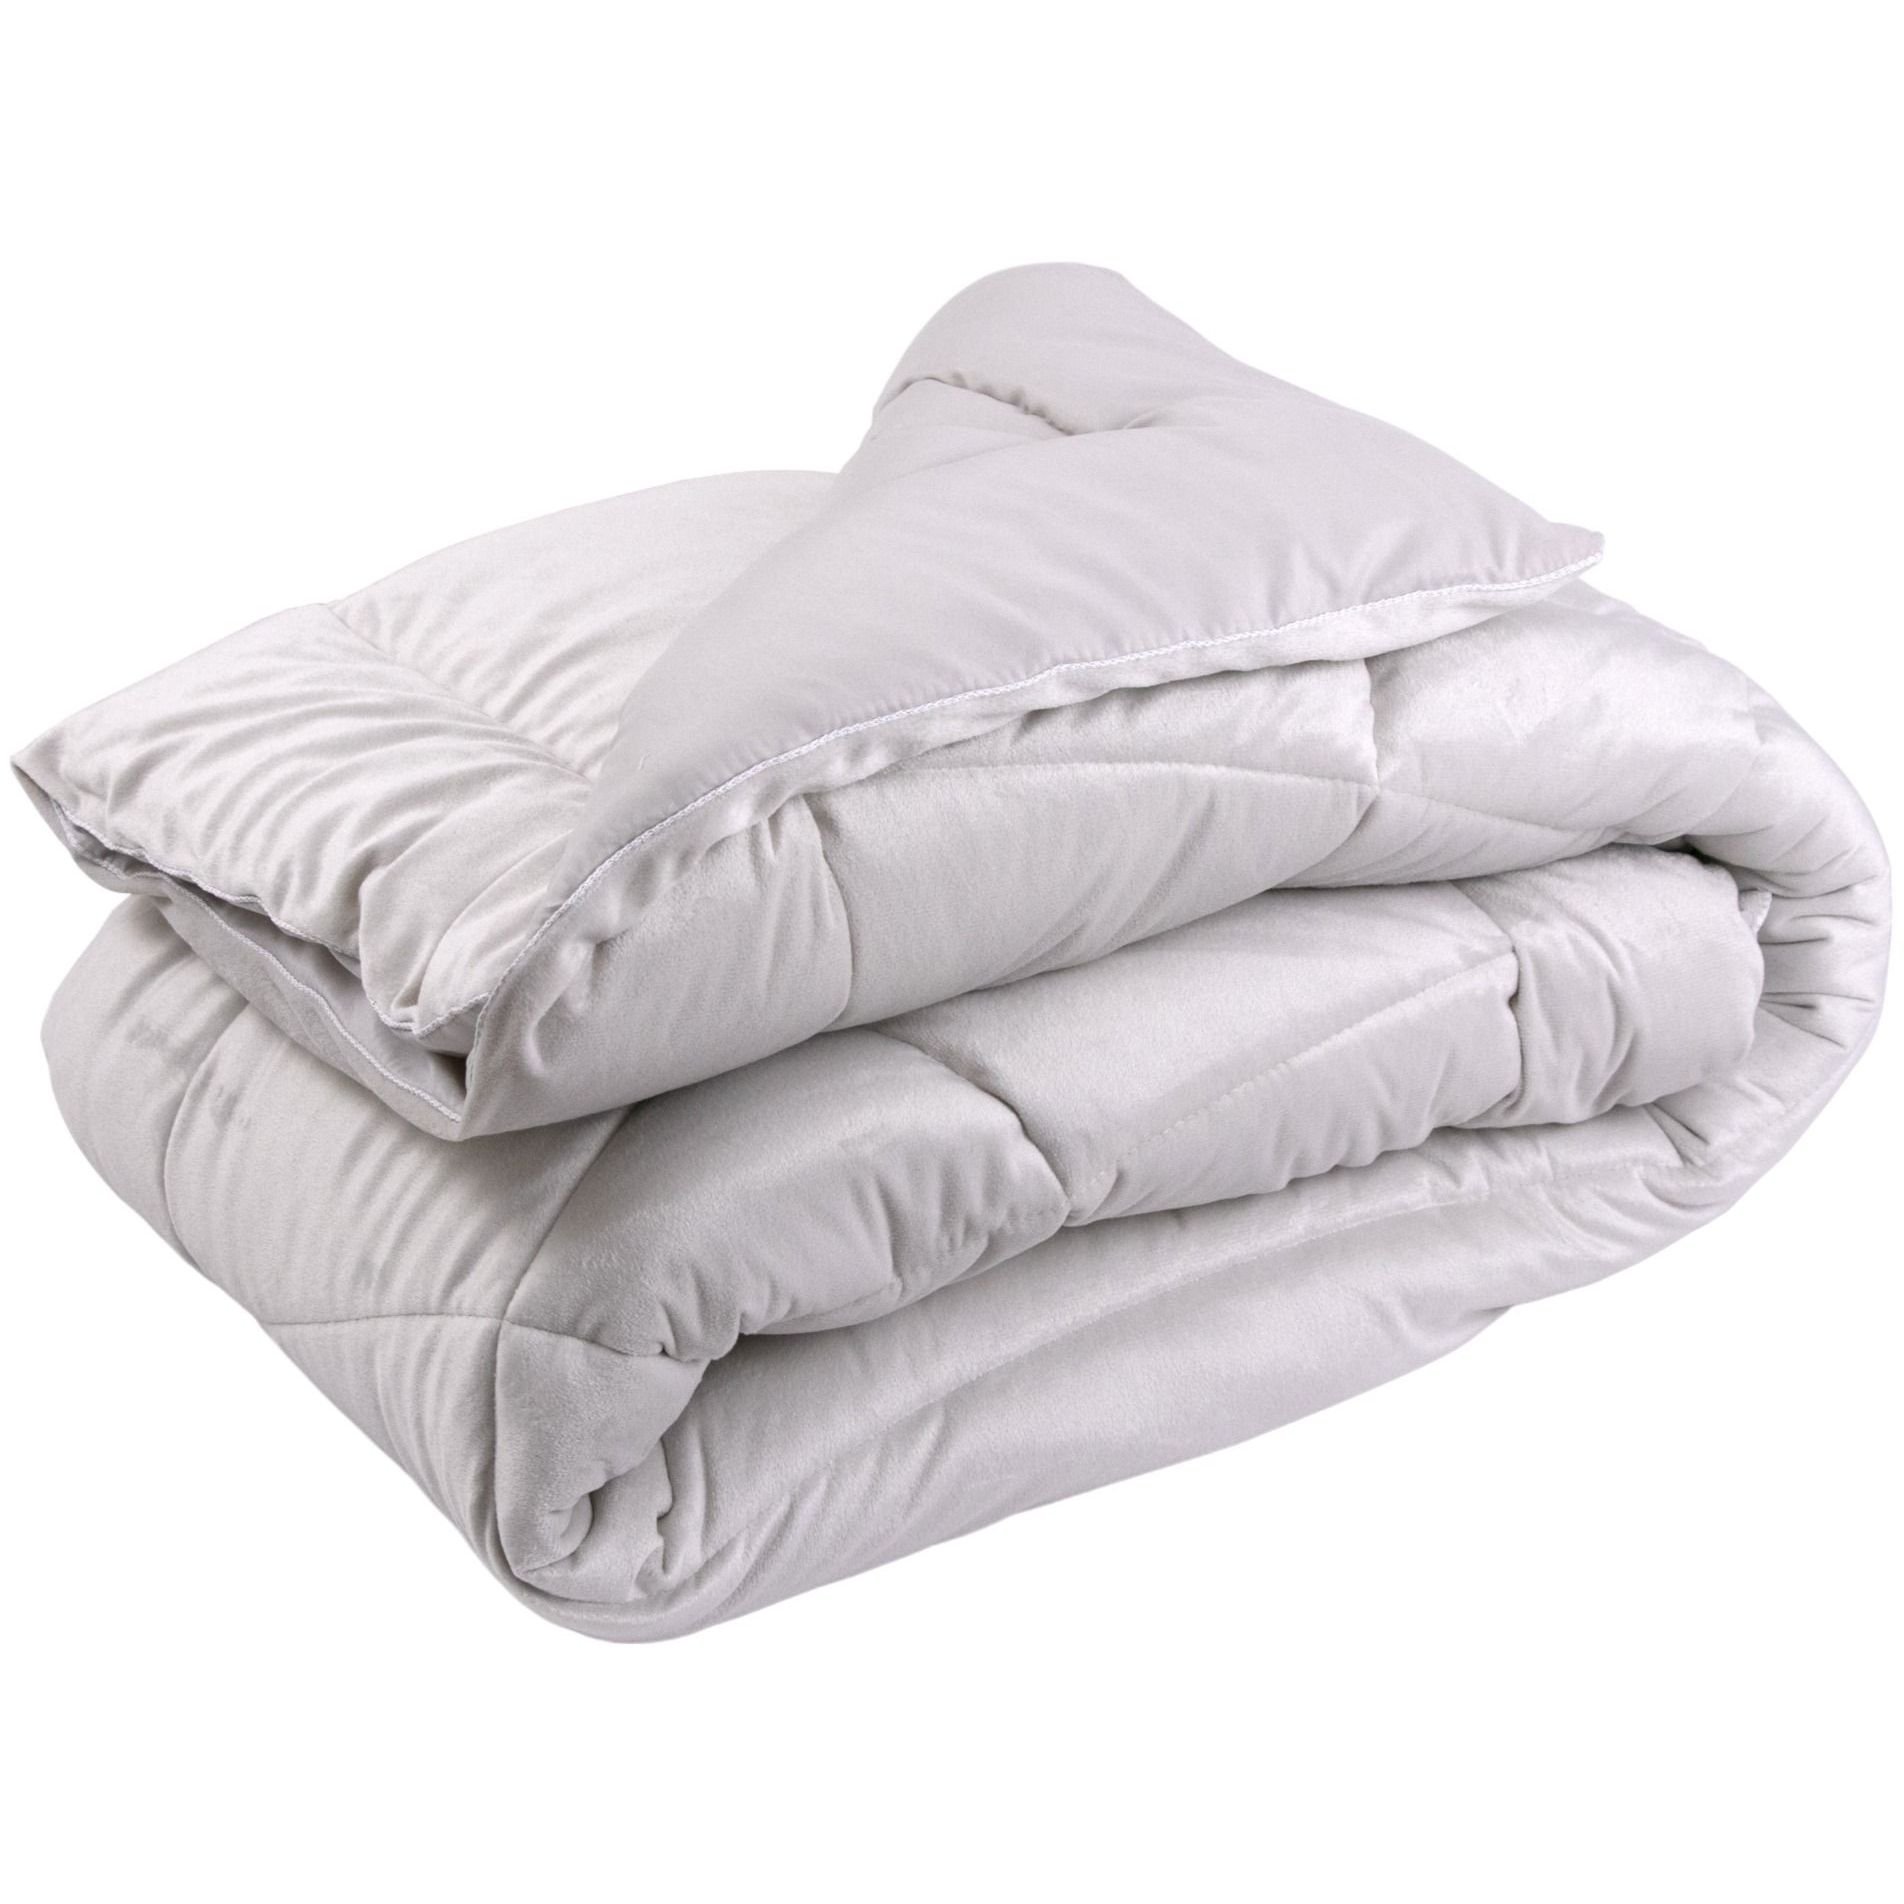 Одеяло велюровое Руно Soft Pearl с силиконовым наполнителем, 200х220, бежевое (322.55_Soft Pearl) - фото 1